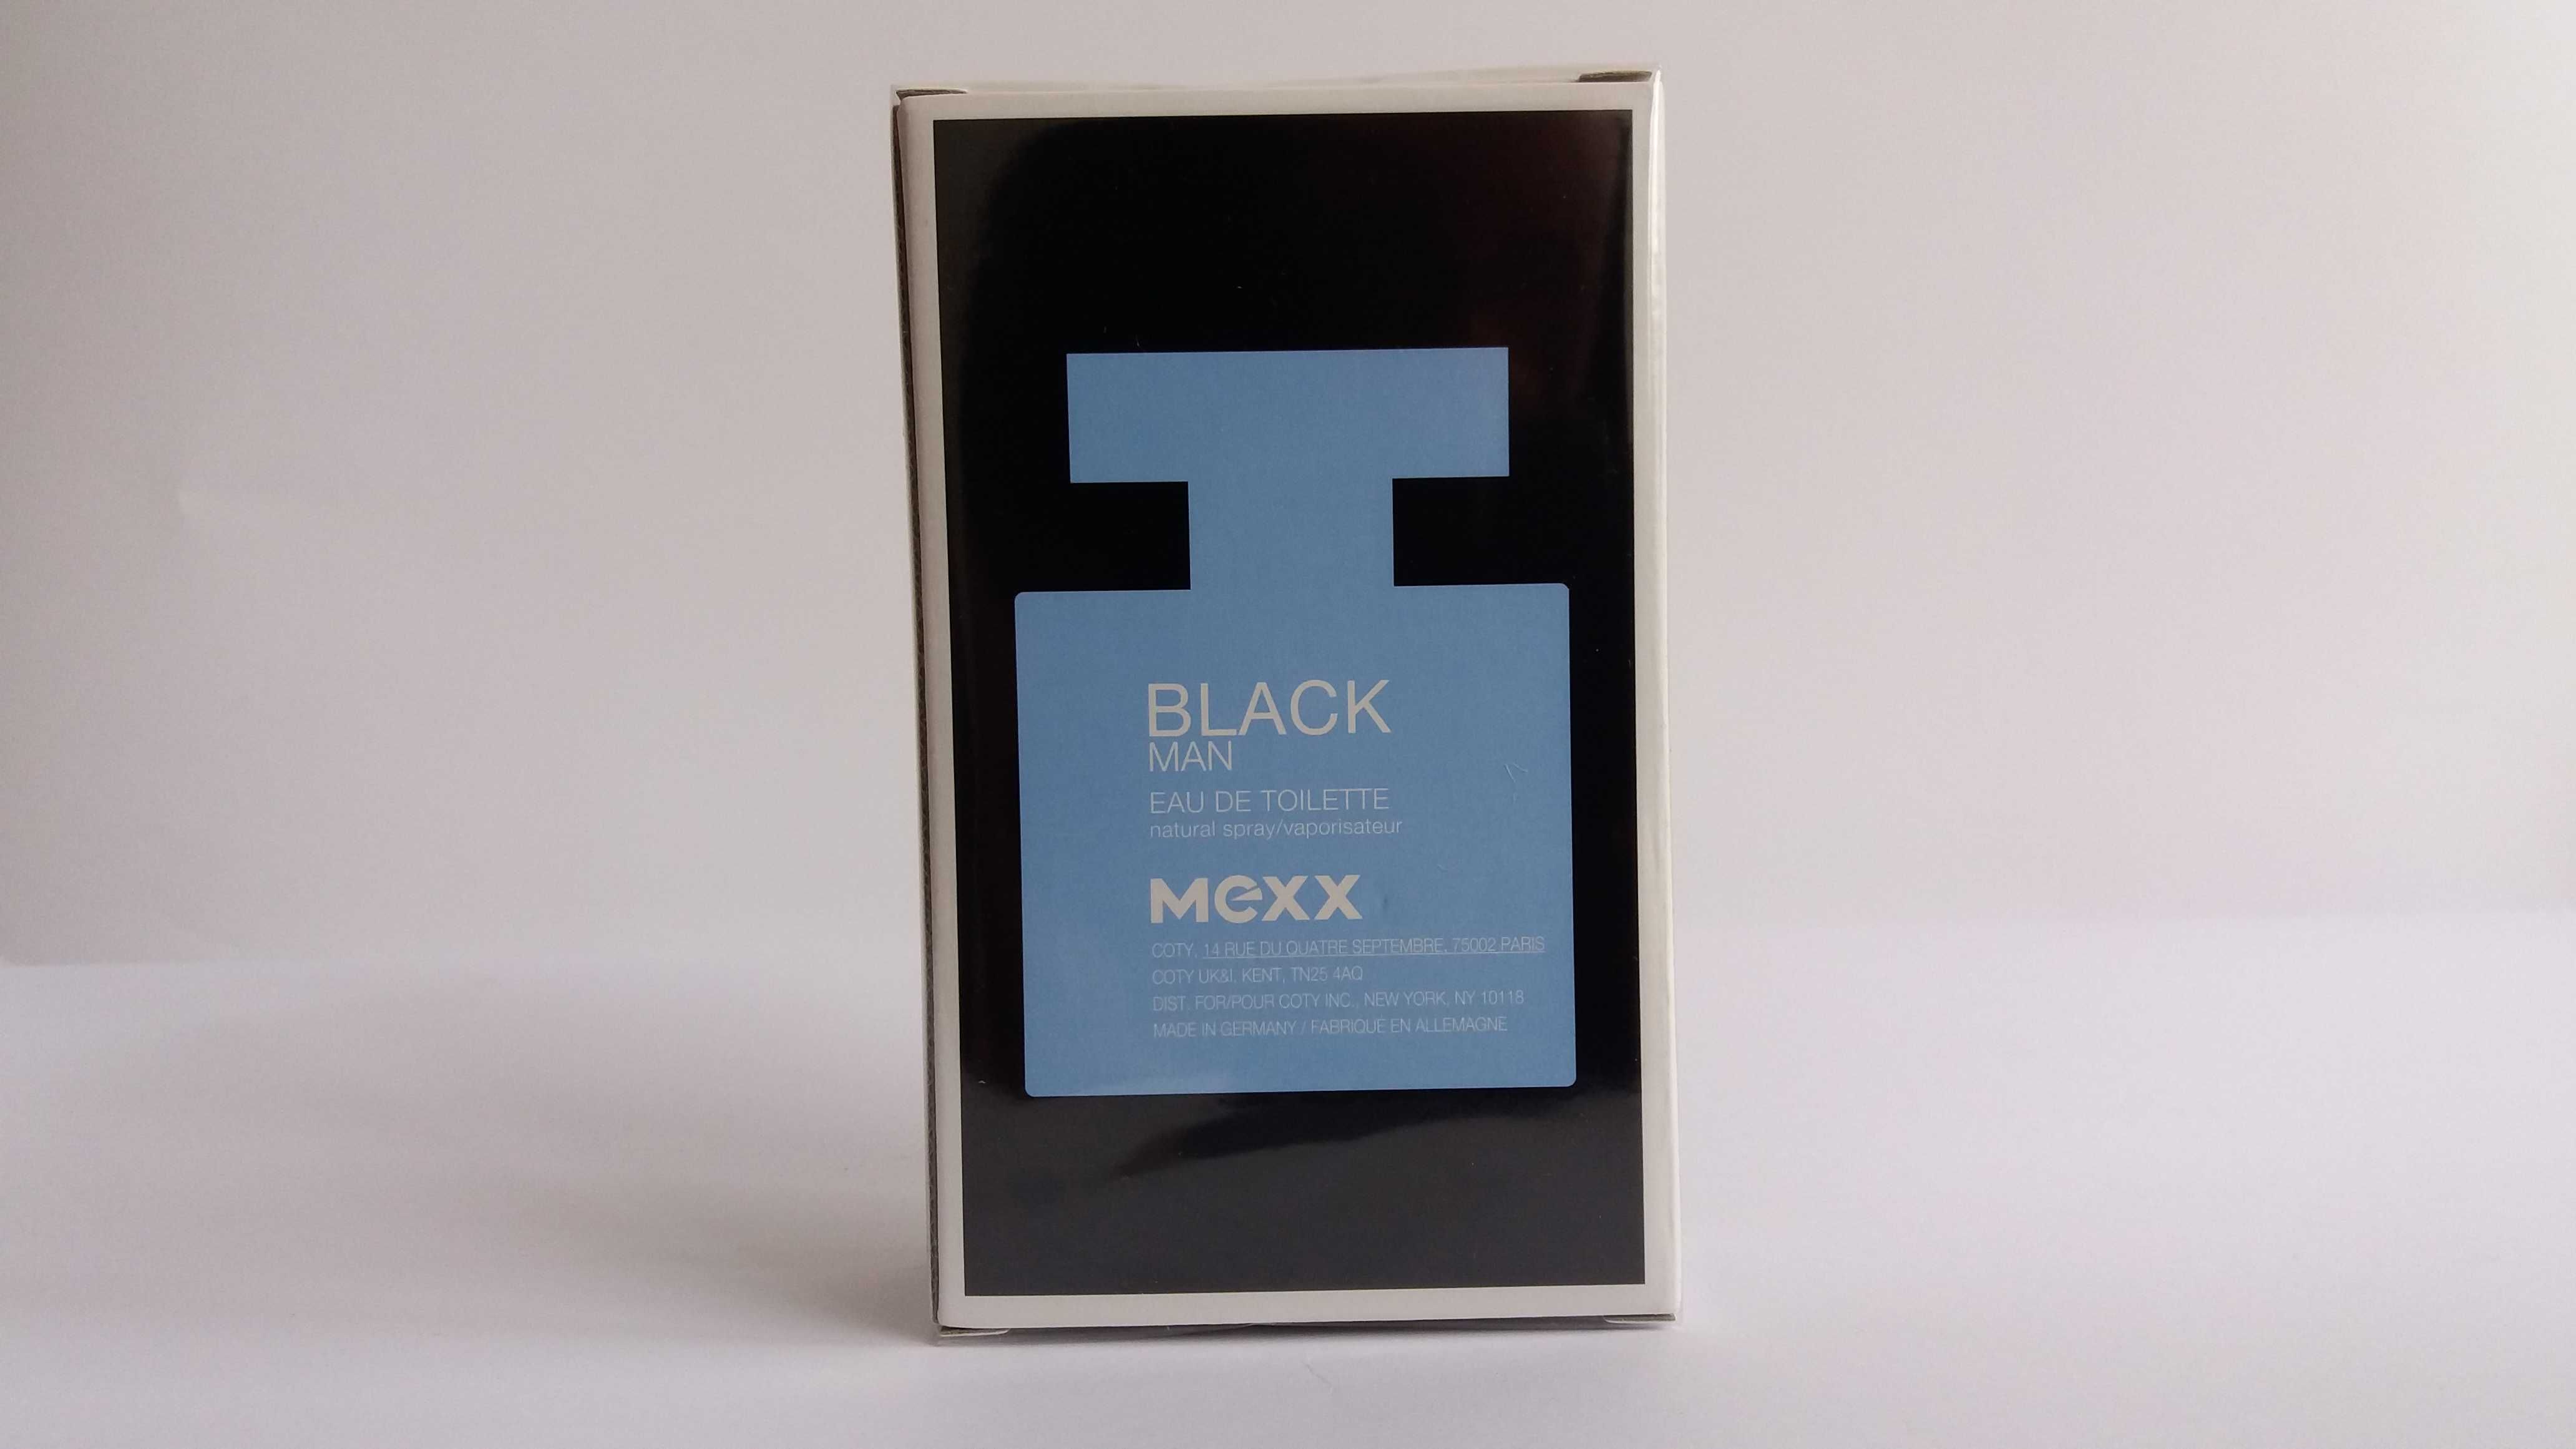 Mexx Black Man woda toaletowa edt 30 ml